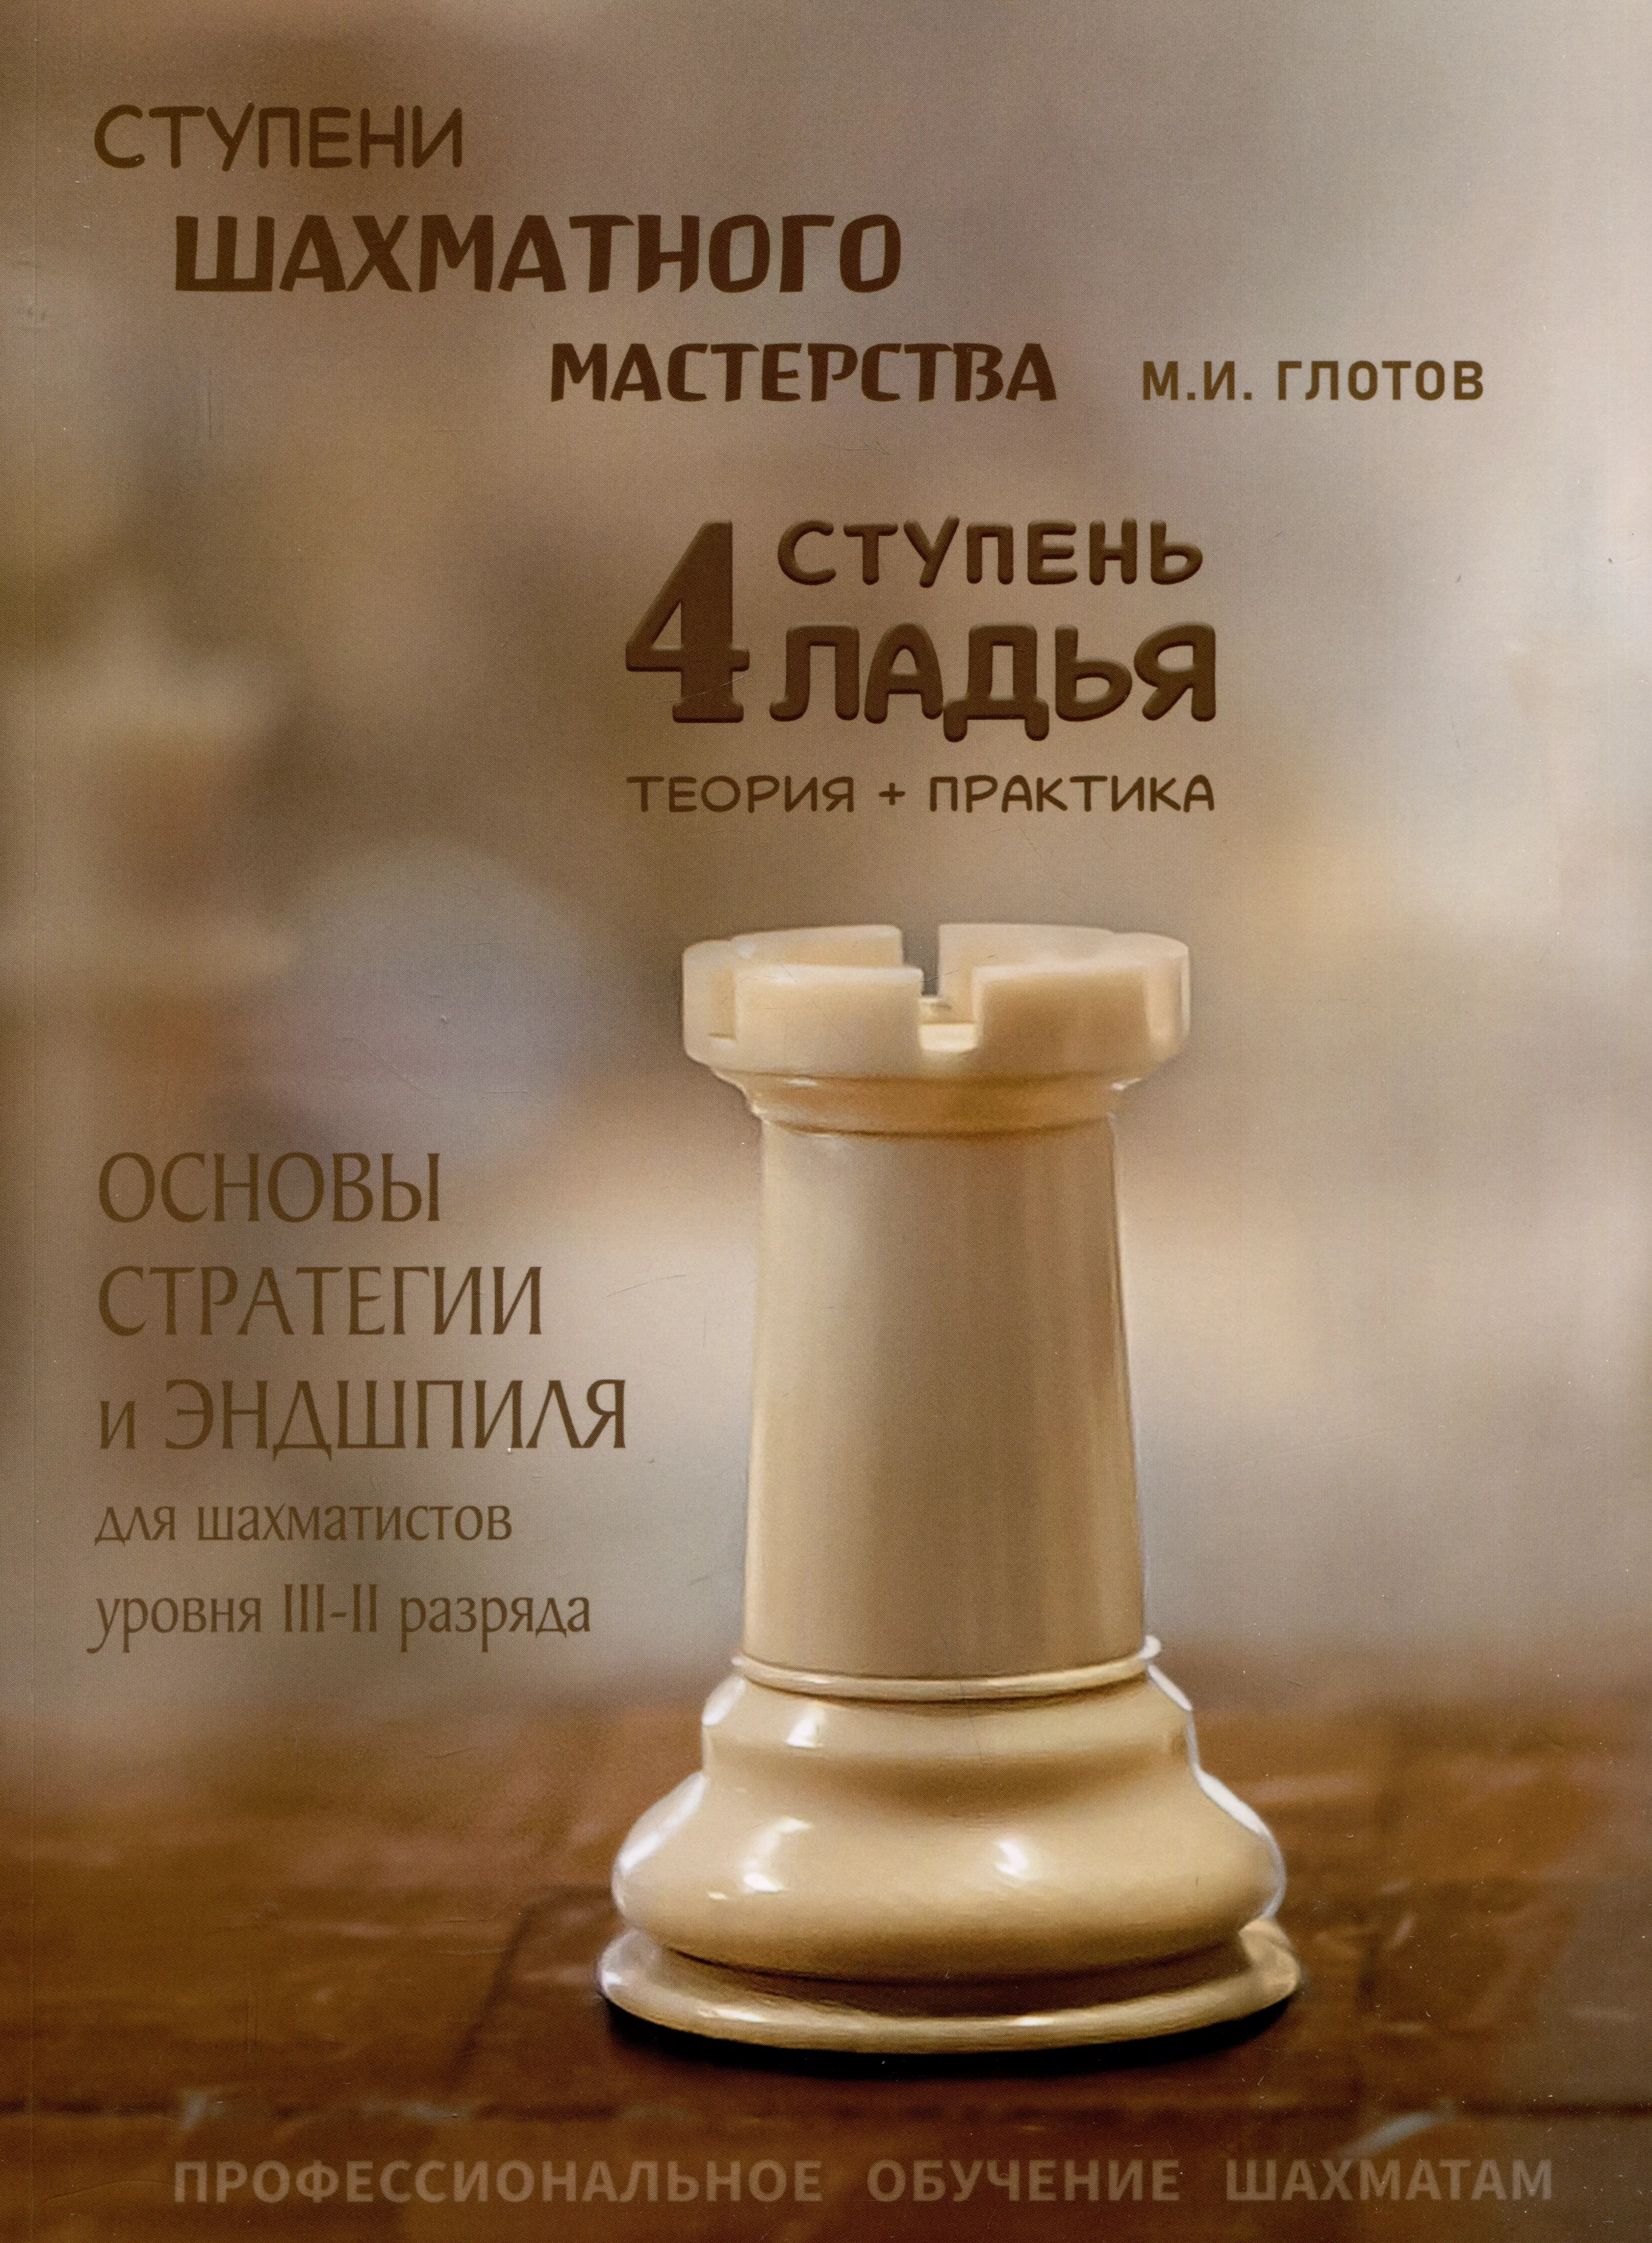 глотов михаил игоревич ступени шахматного мастерства 3 ступень слон Ступени шахматного мастерства. 4 ступень Ладья